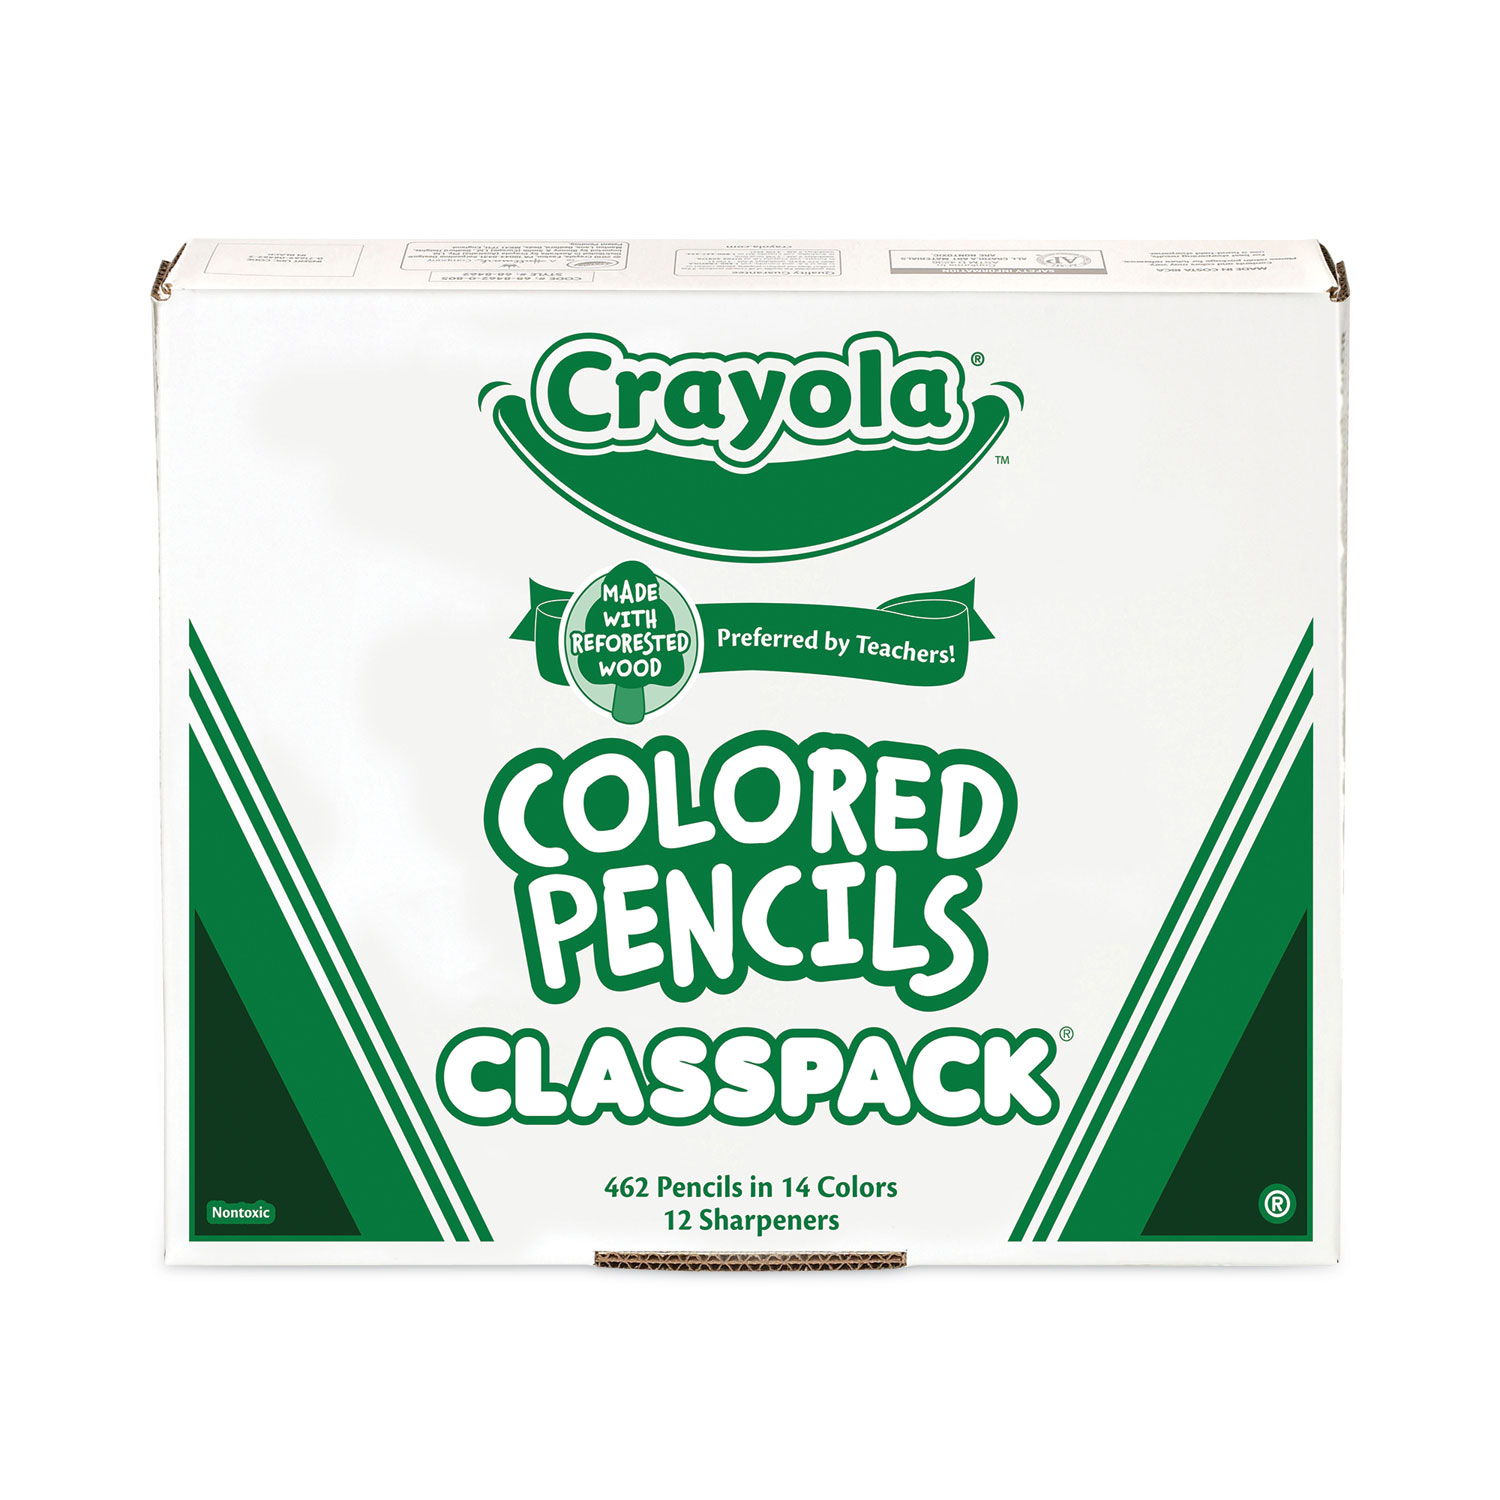 Crayola, Office, Crayola Colored Pencils